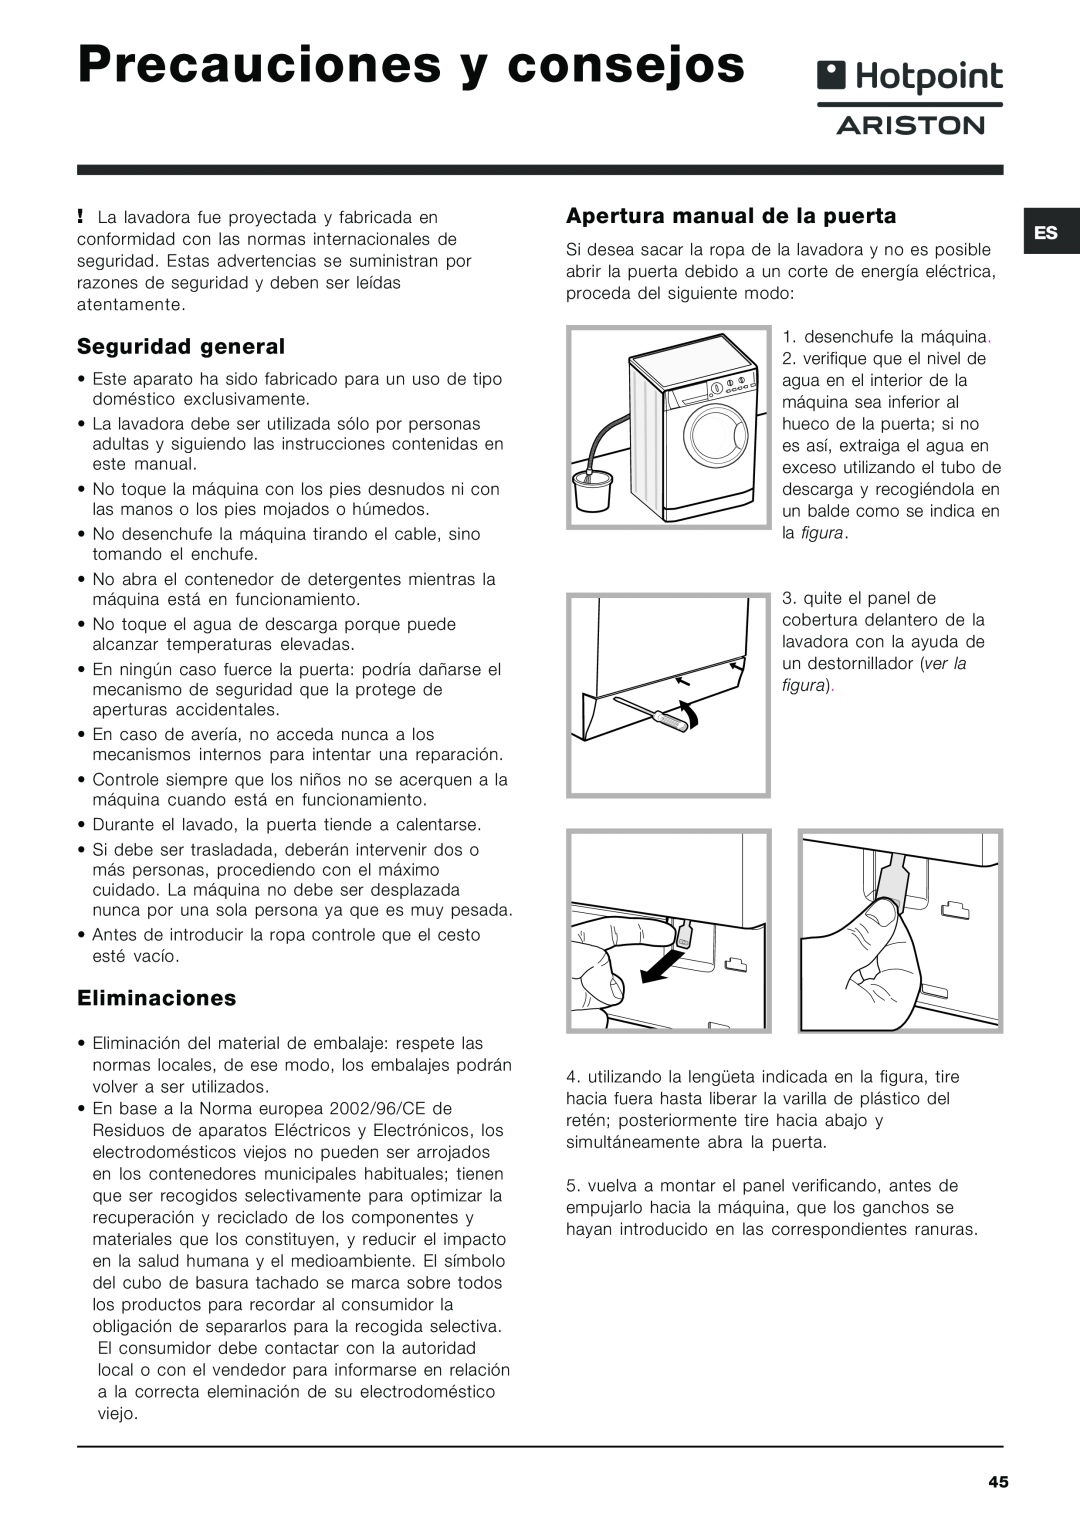 Hotpoint ARXXL105 Precauciones y consejos, Seguridad general, Eliminaciones, Apertura manual de la puerta 